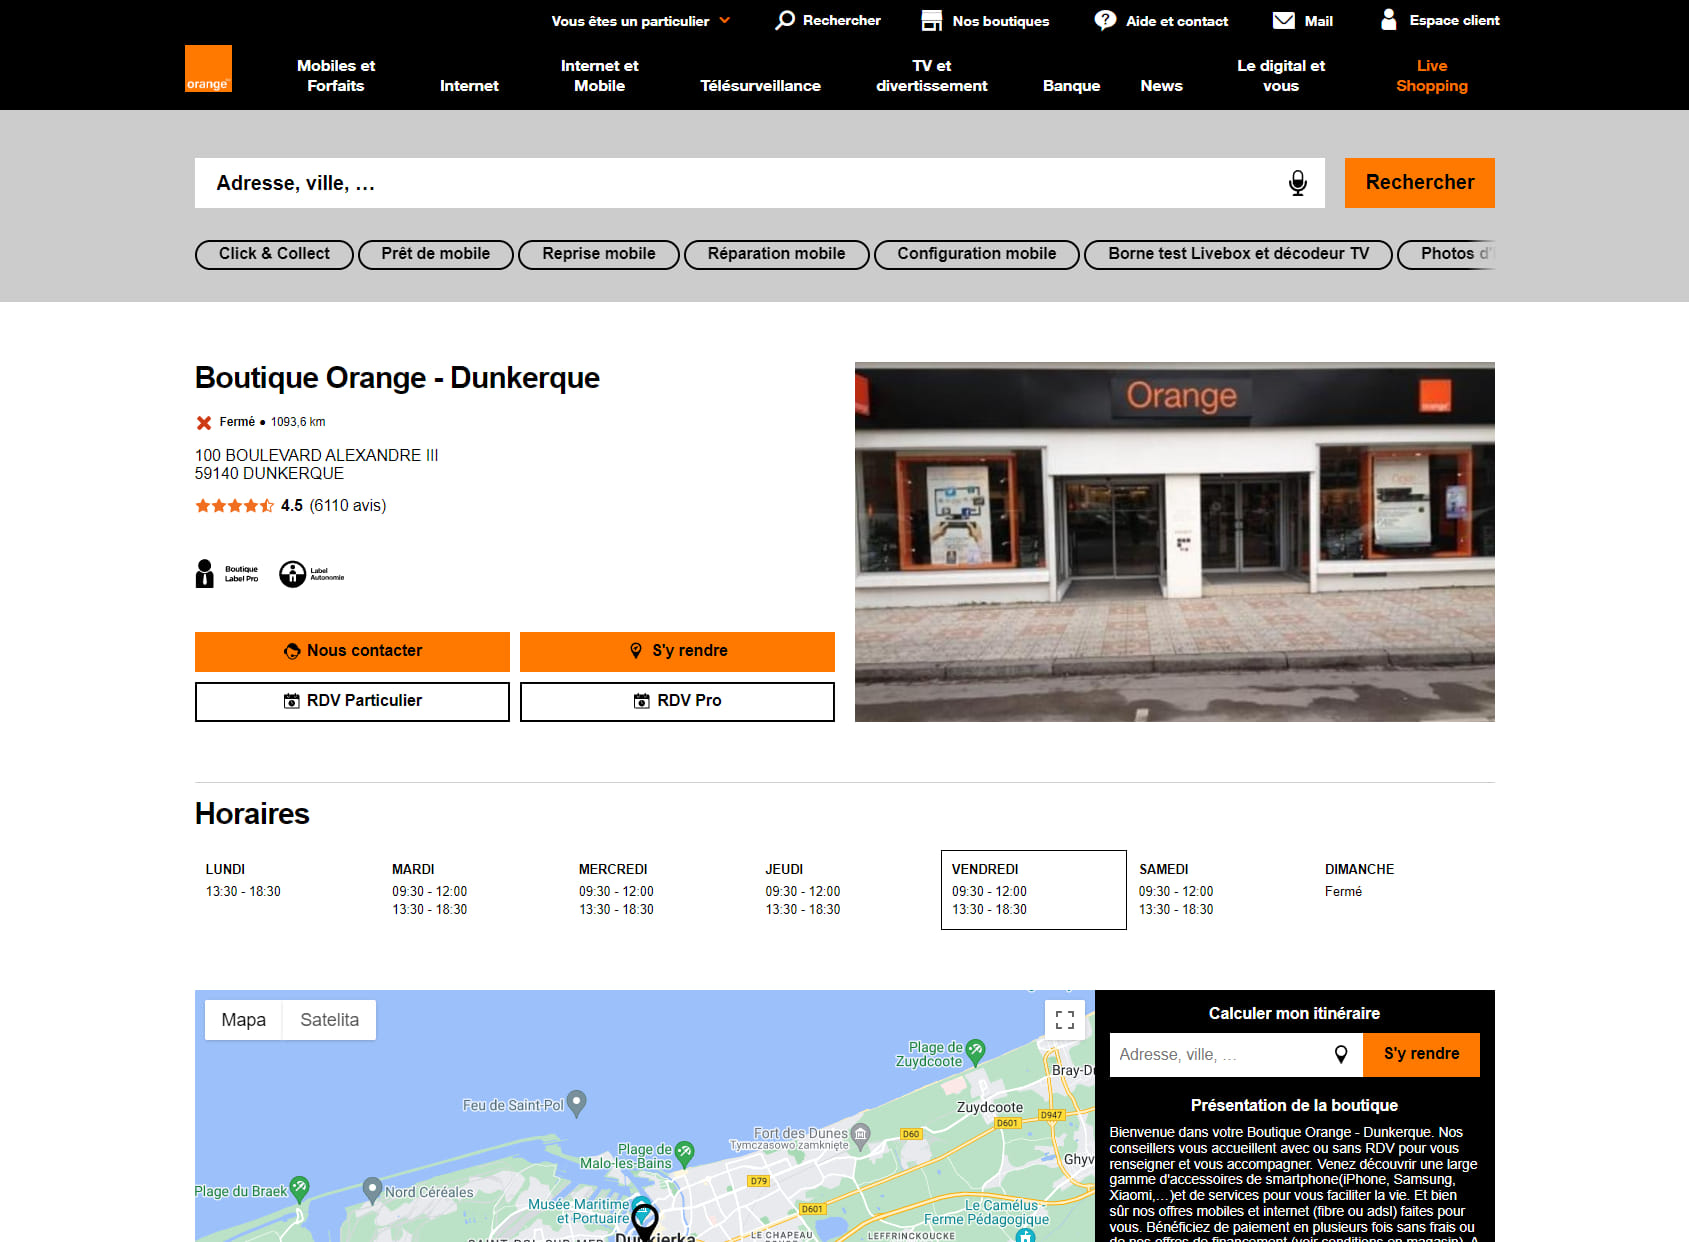 Boutique Orange - Dunkerque